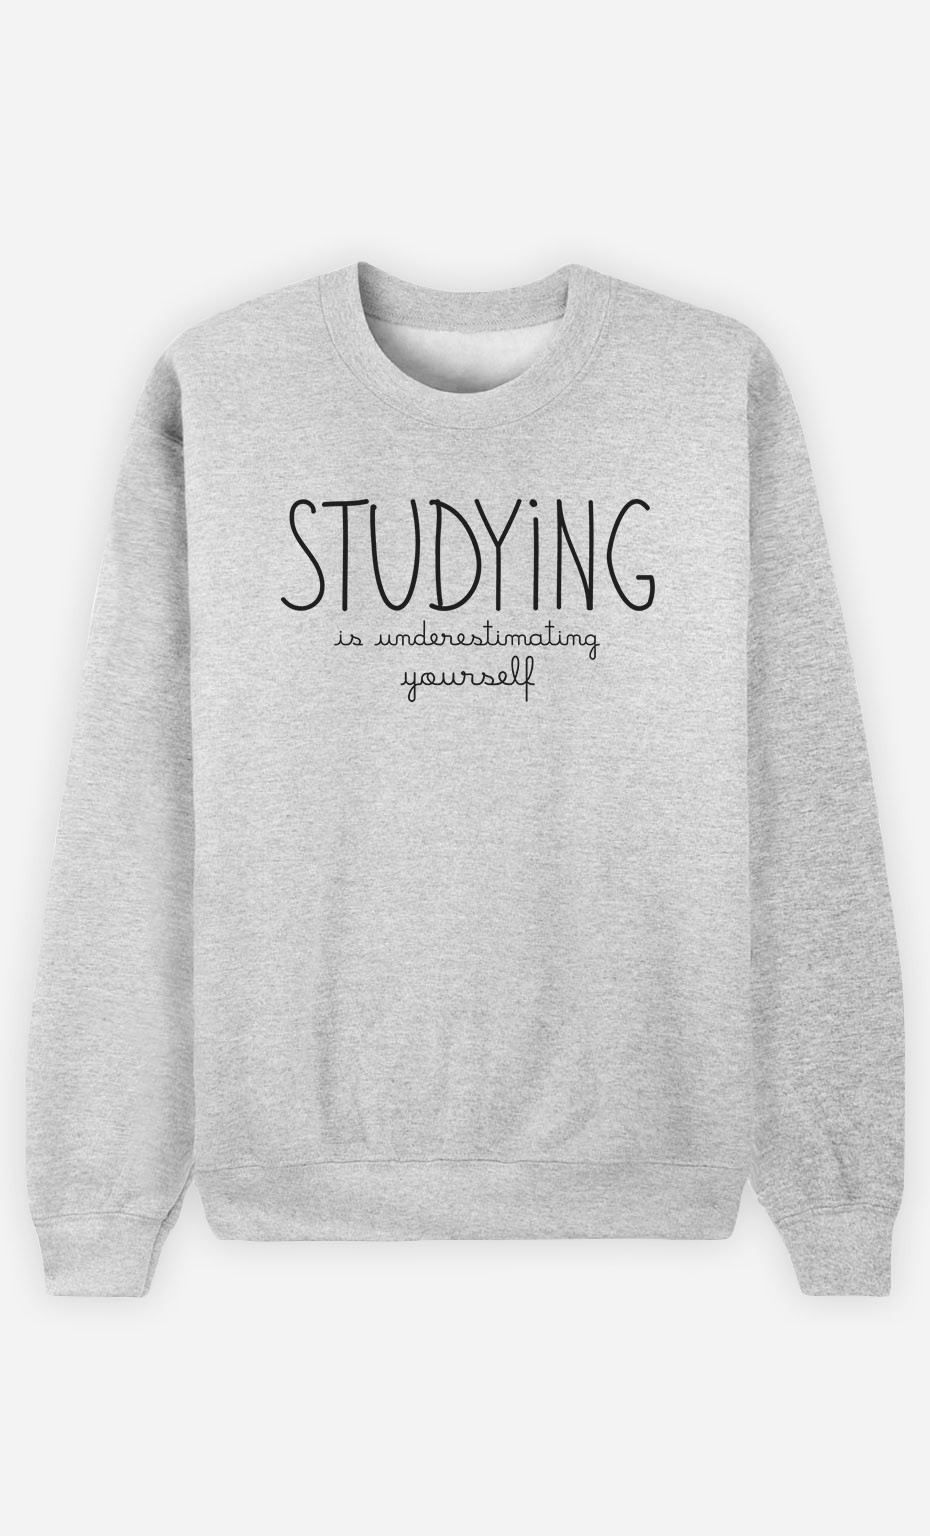 Sweatshirt Studying is Underestimating Yourself